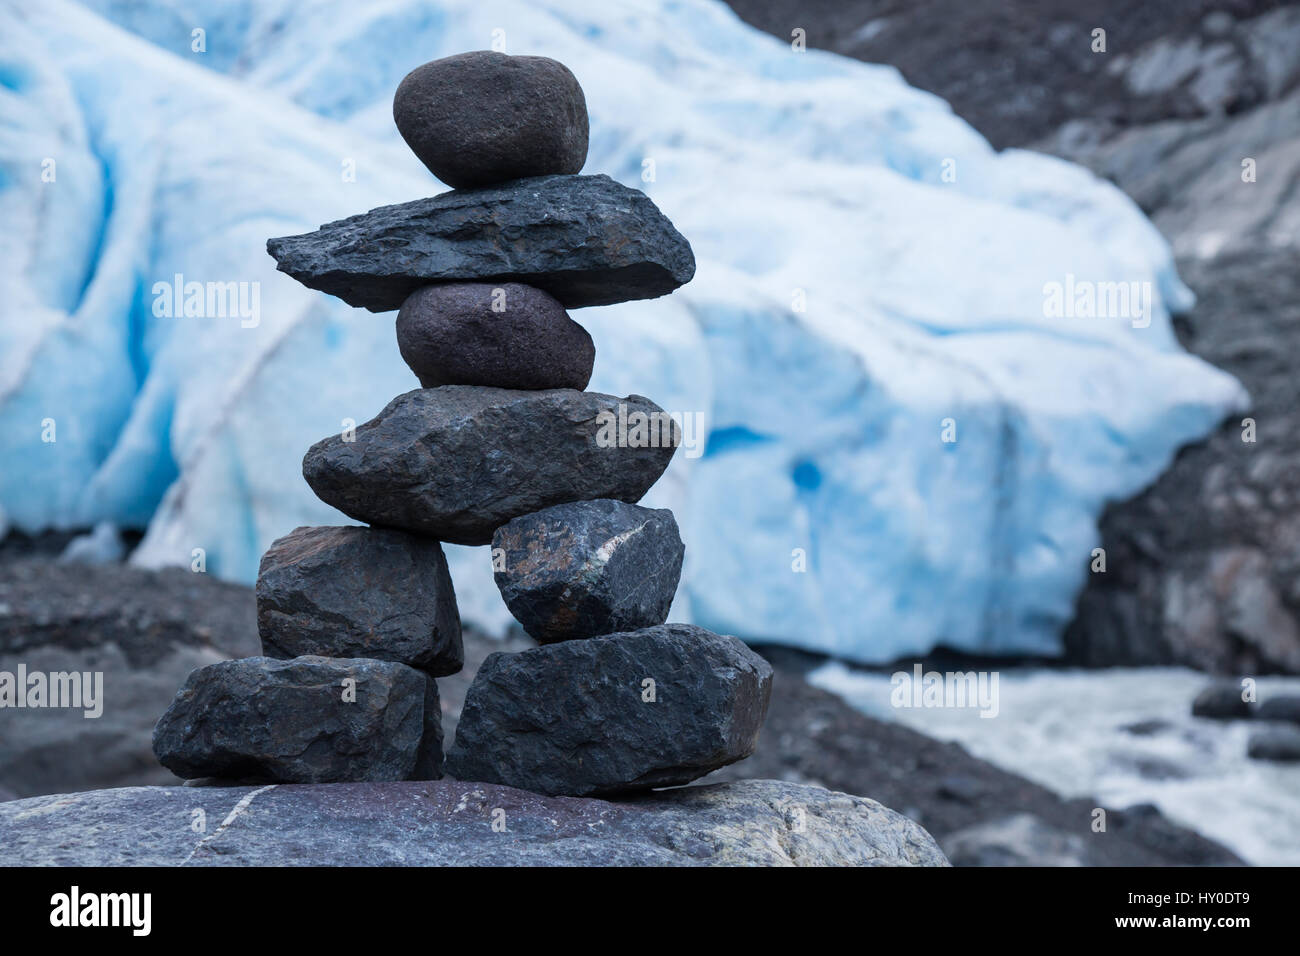 Un tumulo costruito su una roccia nel recessional morena del ghiacciaio orso appare come una piccola persona. La pila di rocce scure è contrastato dal luminoso Foto Stock